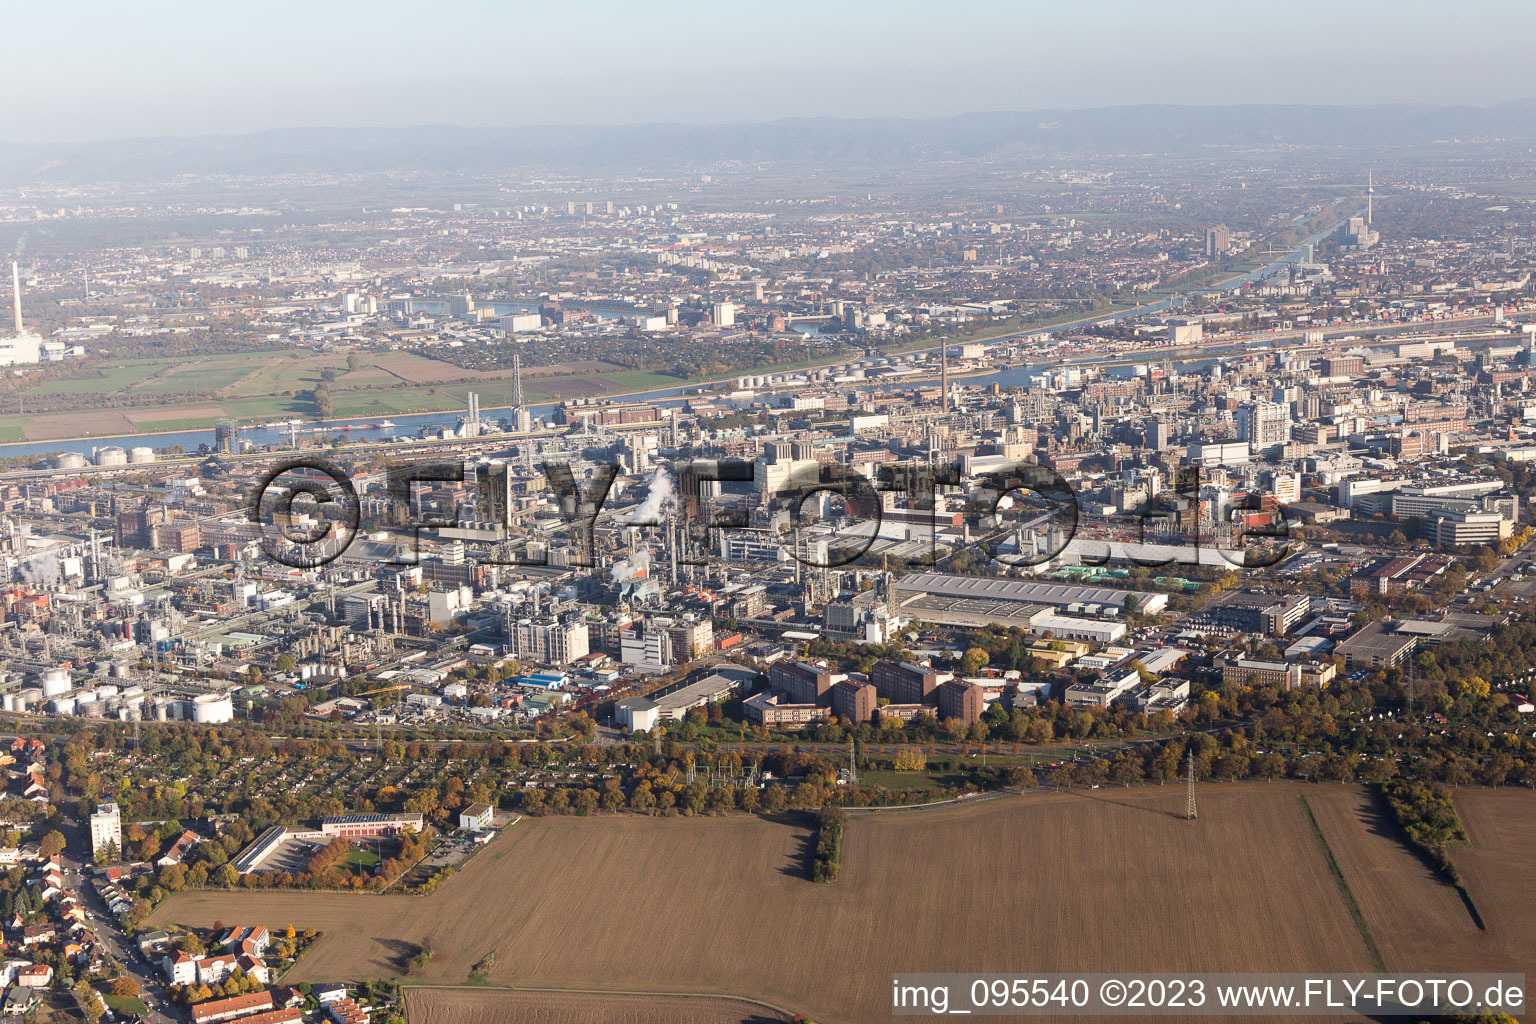 Quartier BASF in Ludwigshafen am Rhein dans le département Rhénanie-Palatinat, Allemagne du point de vue du drone